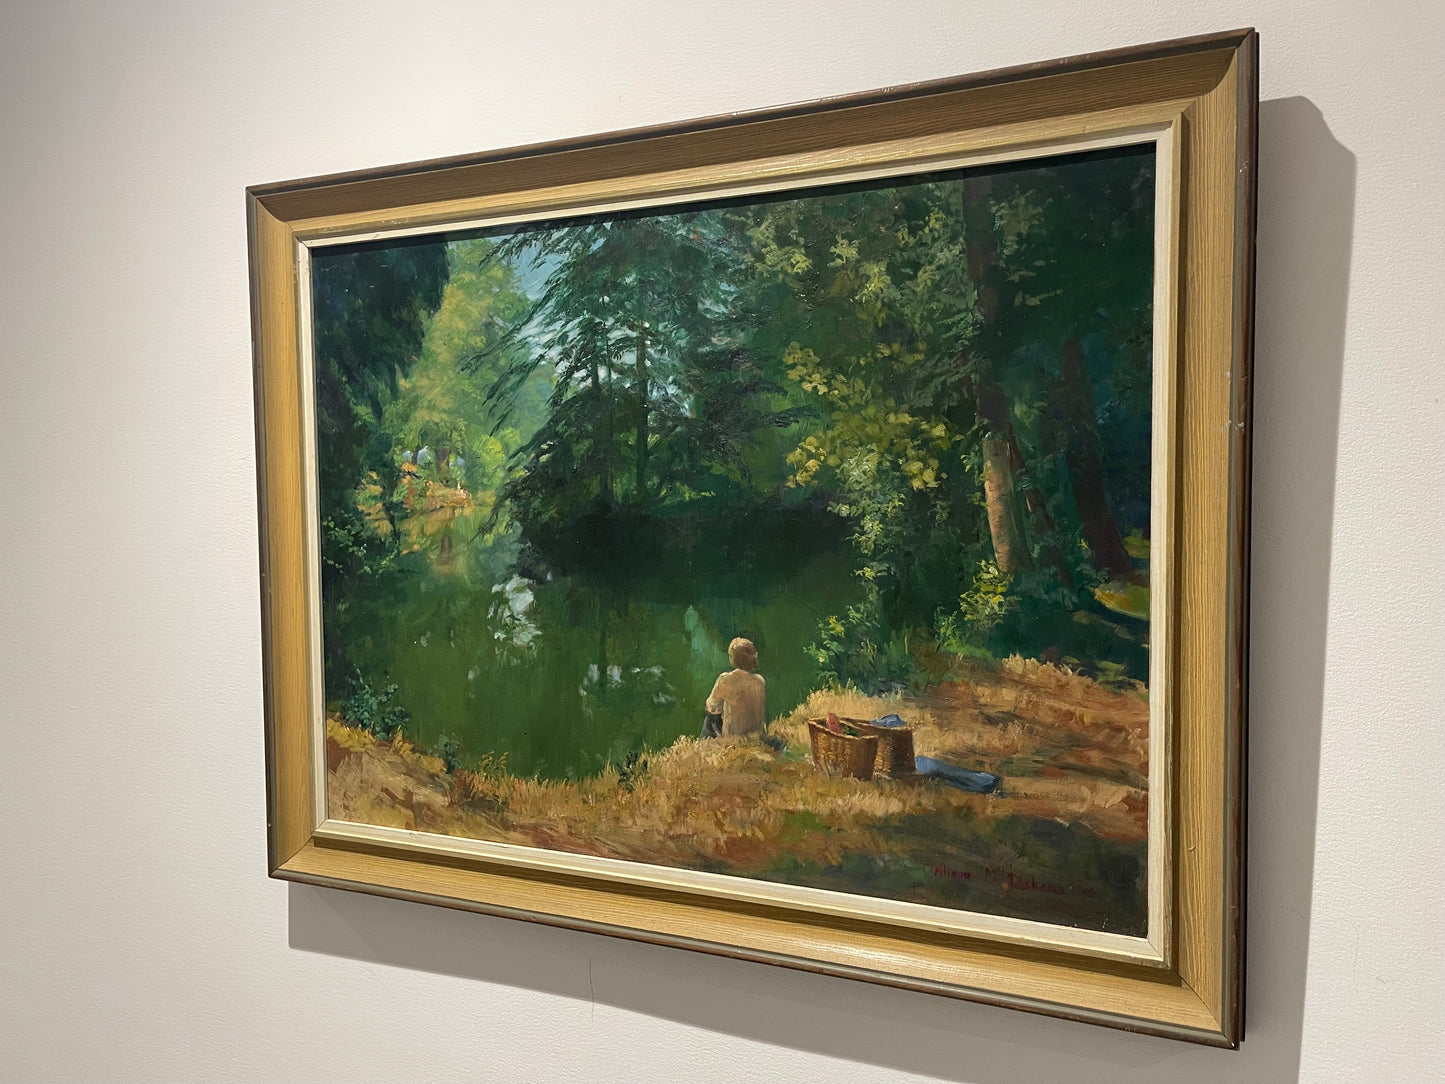 Alison Margaret Dickens b.1917 - Oil Painting Lake Scene